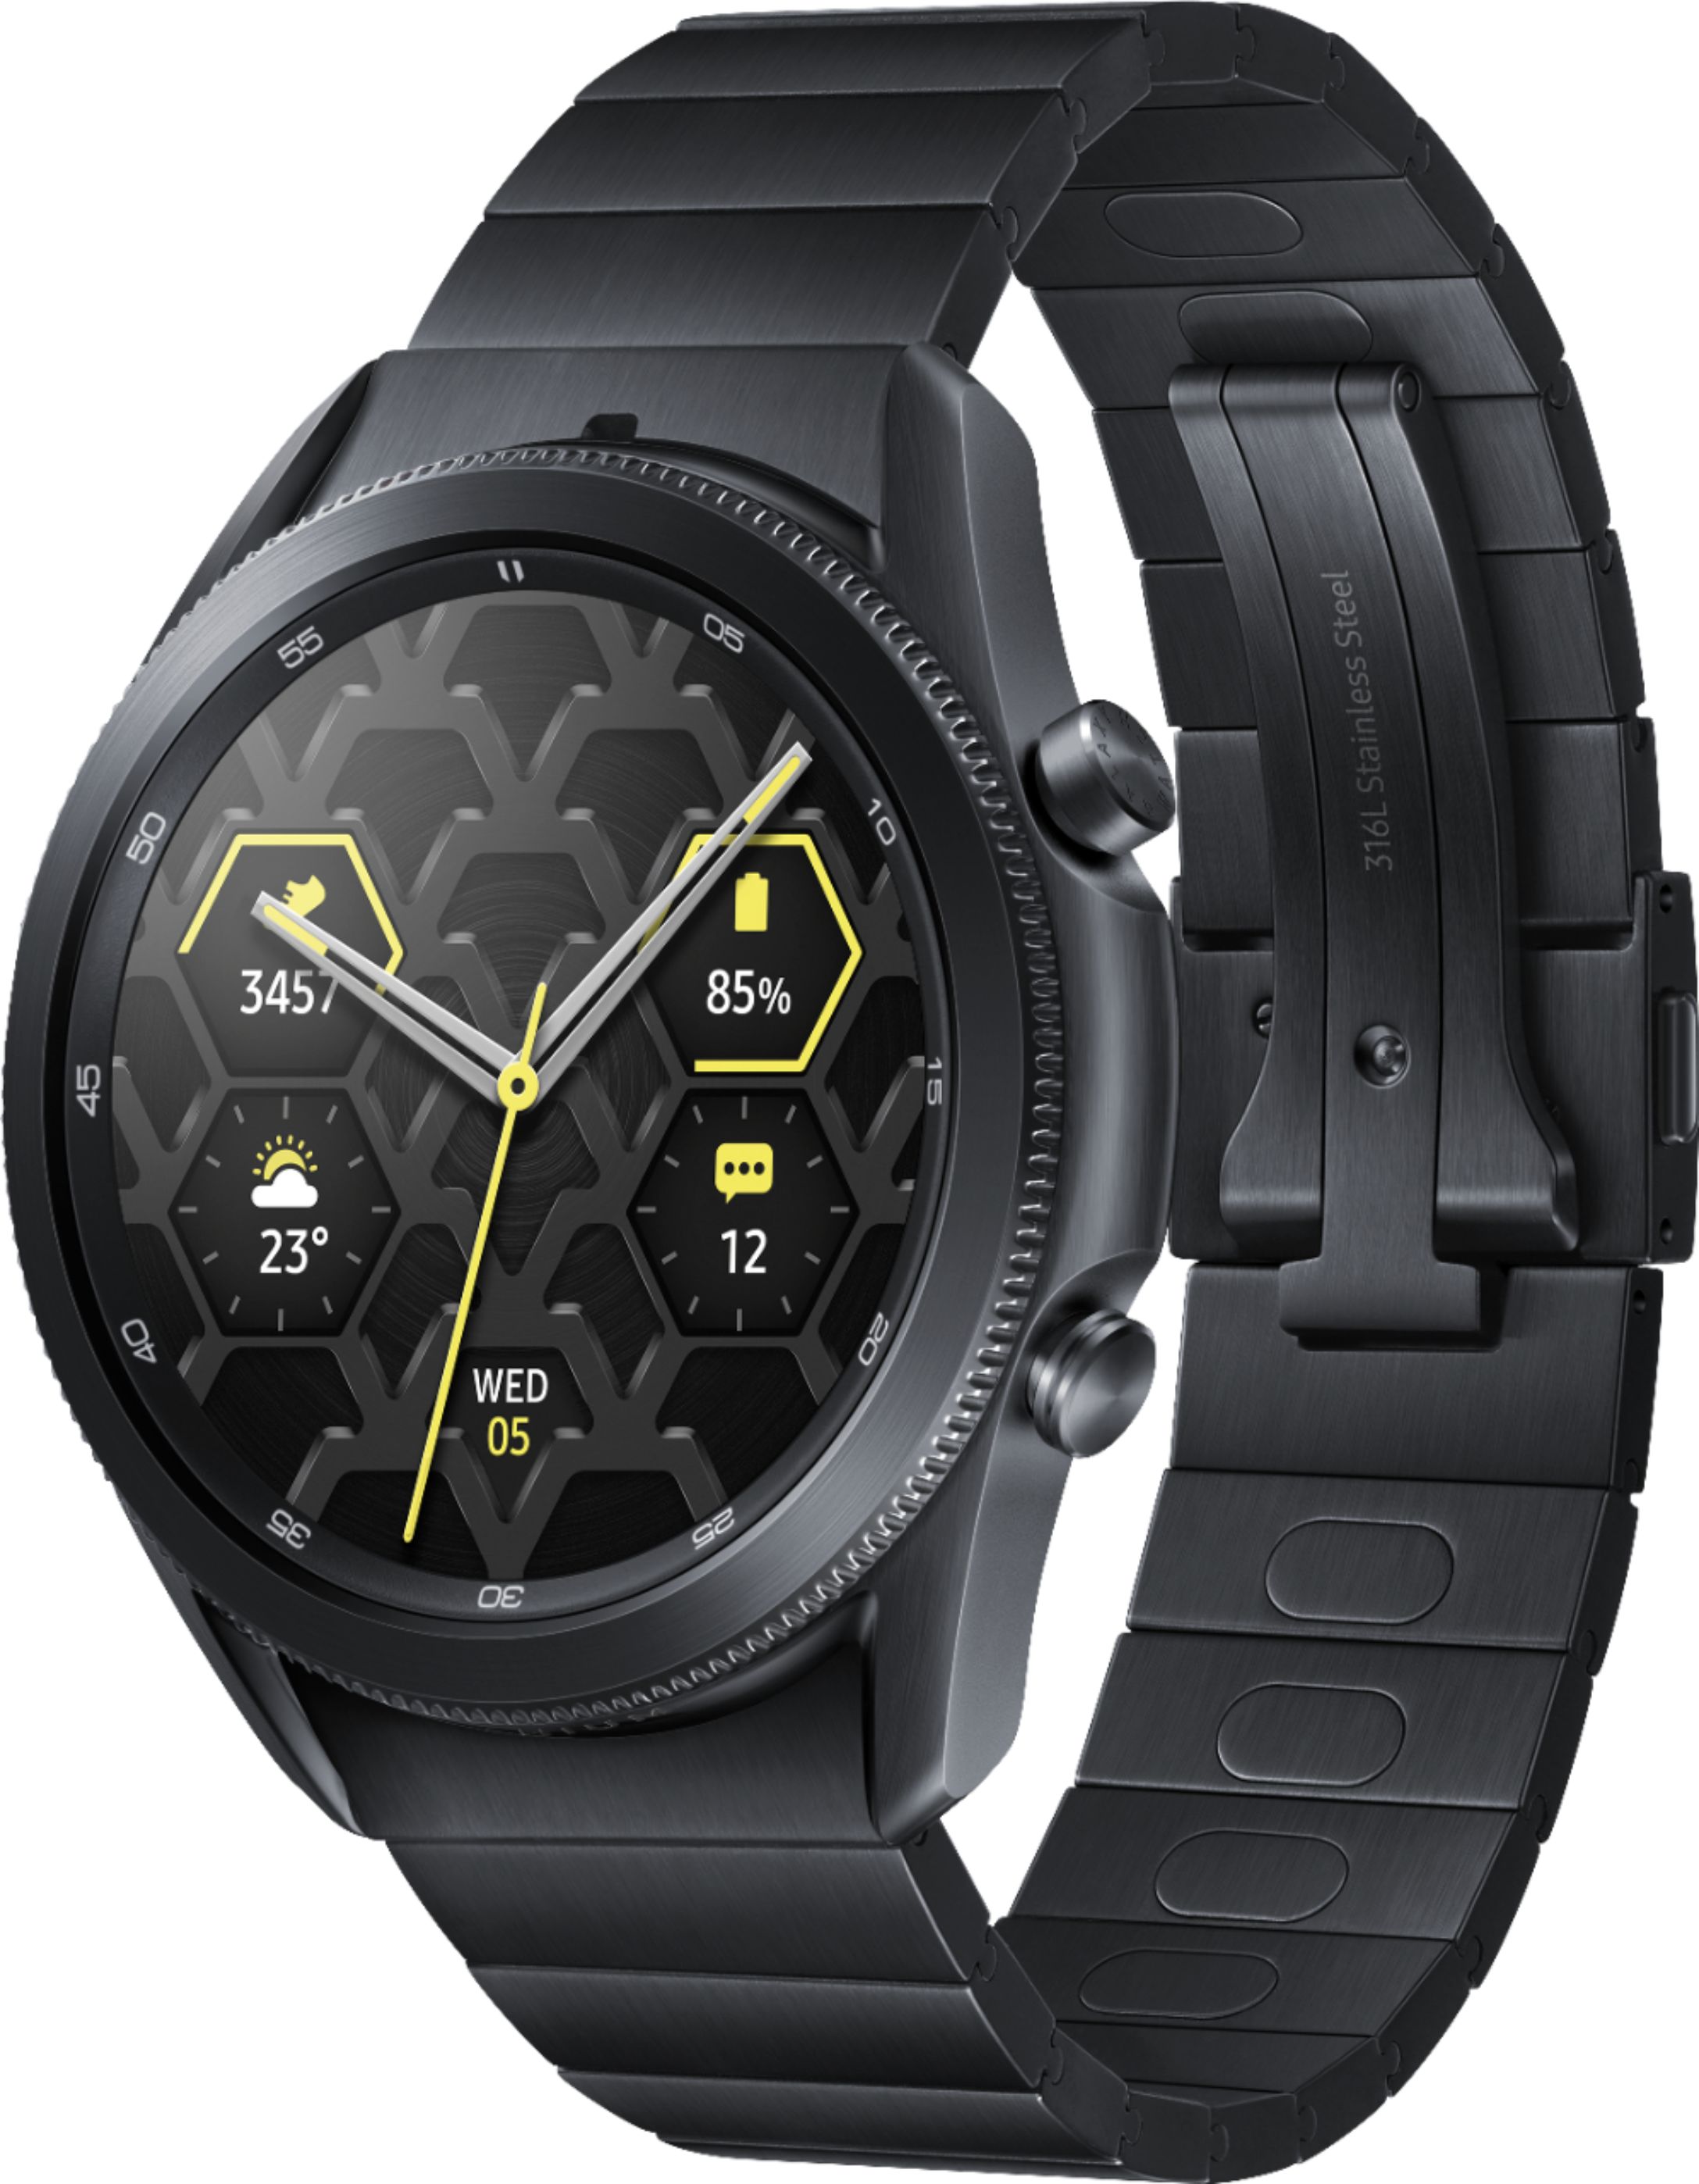 Bepalen Bestuurbaar overal Best Buy: Samsung Galaxy Watch3 Titanium Smartwatch 45mm BT Mystic Black  SM-R840NTKAXAR